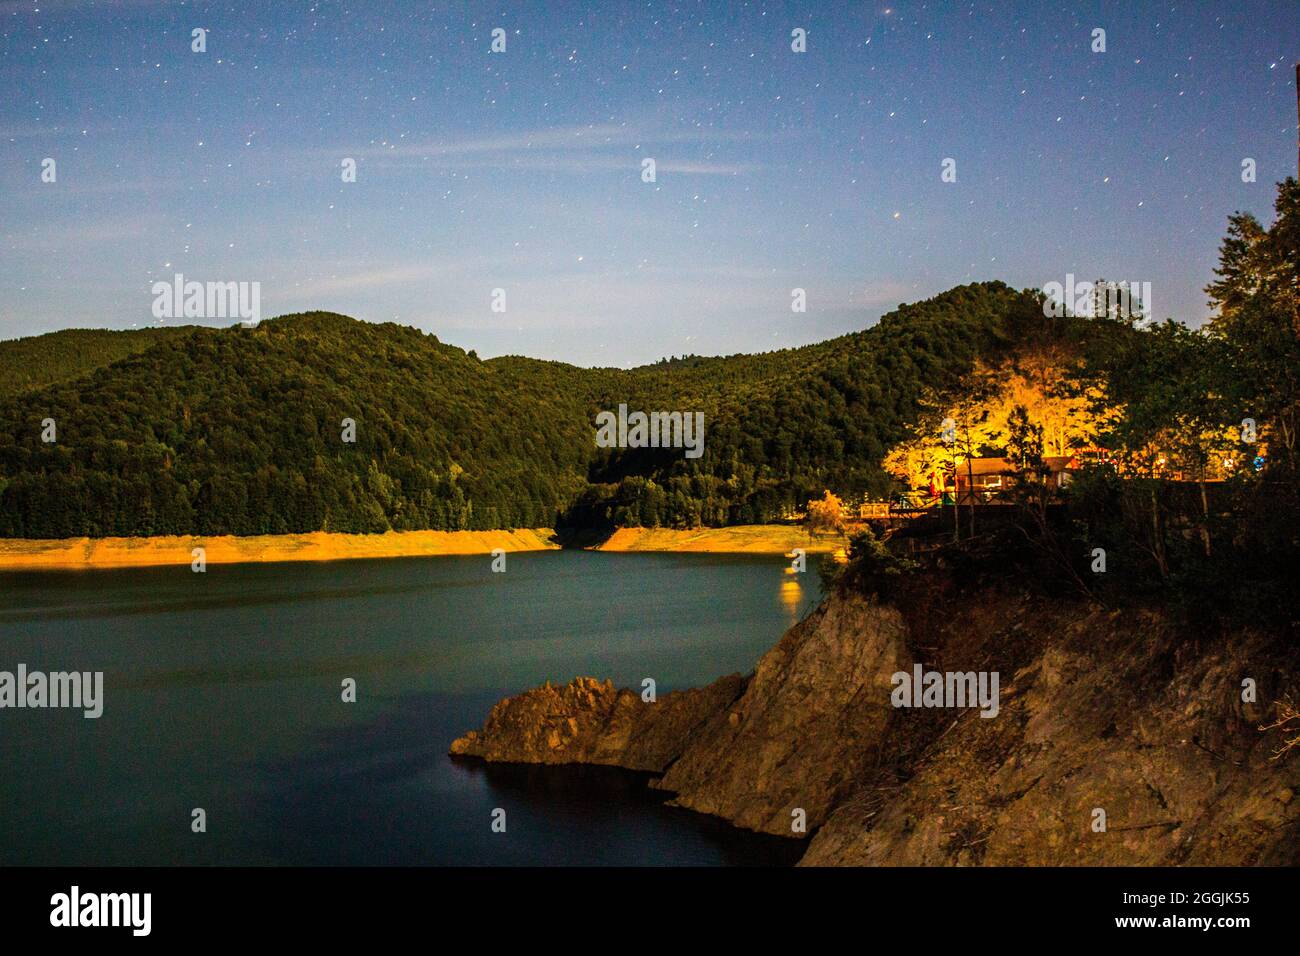 Lago Vidraru en el condado de Arges, Rumania, que refleja el cielo nocturno. Foto de stock